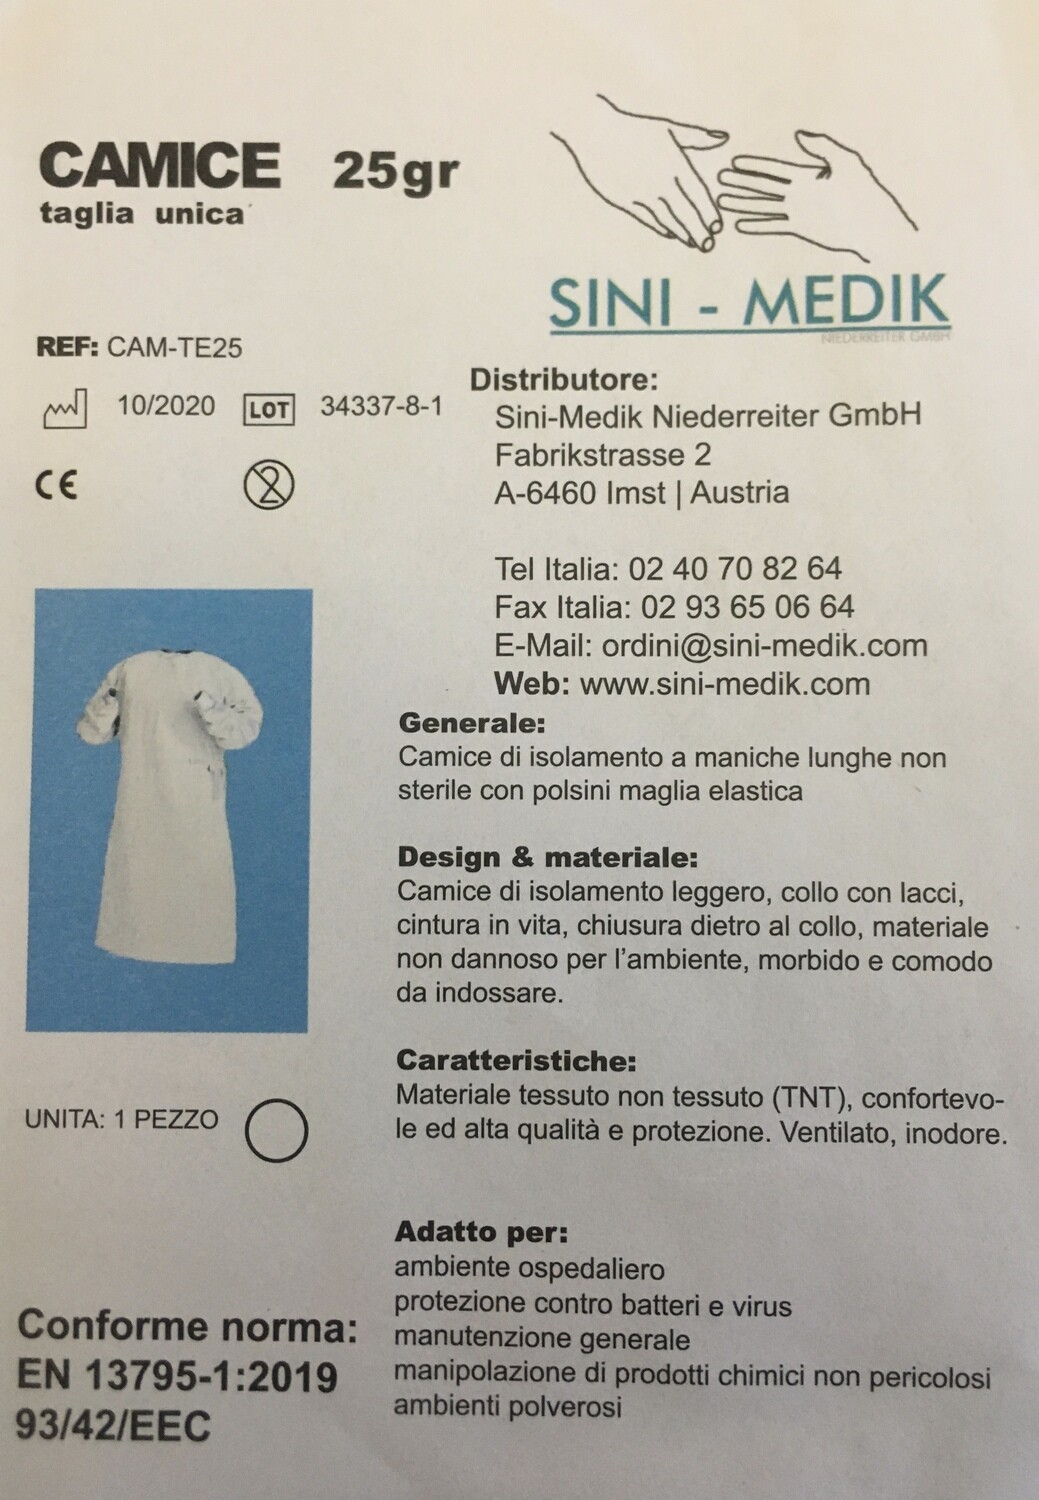 Camice di protezione tnt bianco gr.25 con polsini in maglia elastica en 13795-1:2019 93/42/eec